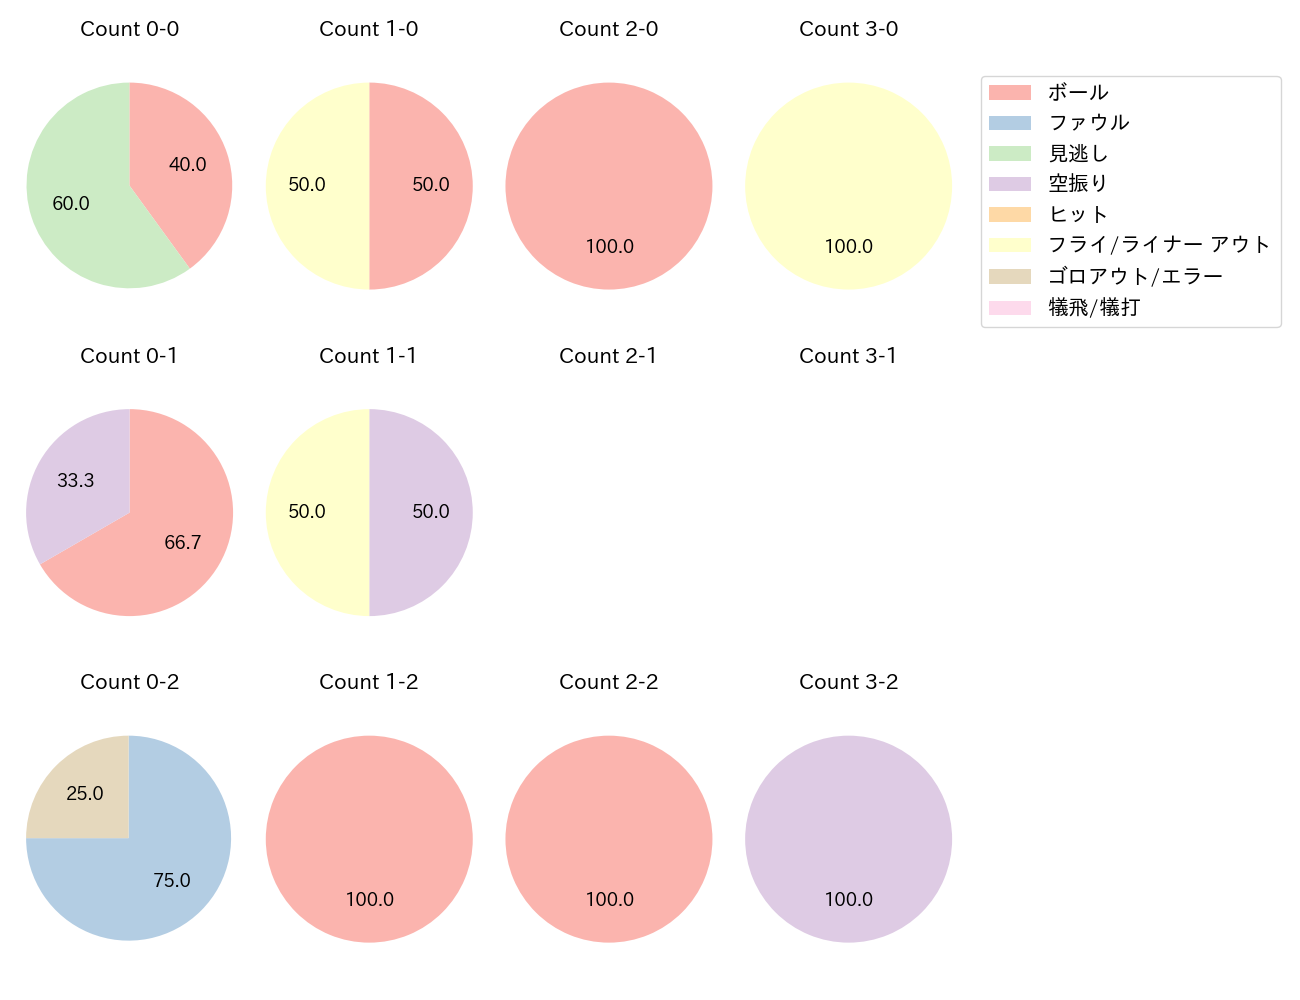 元 謙太の球数分布(2022年オープン戦)